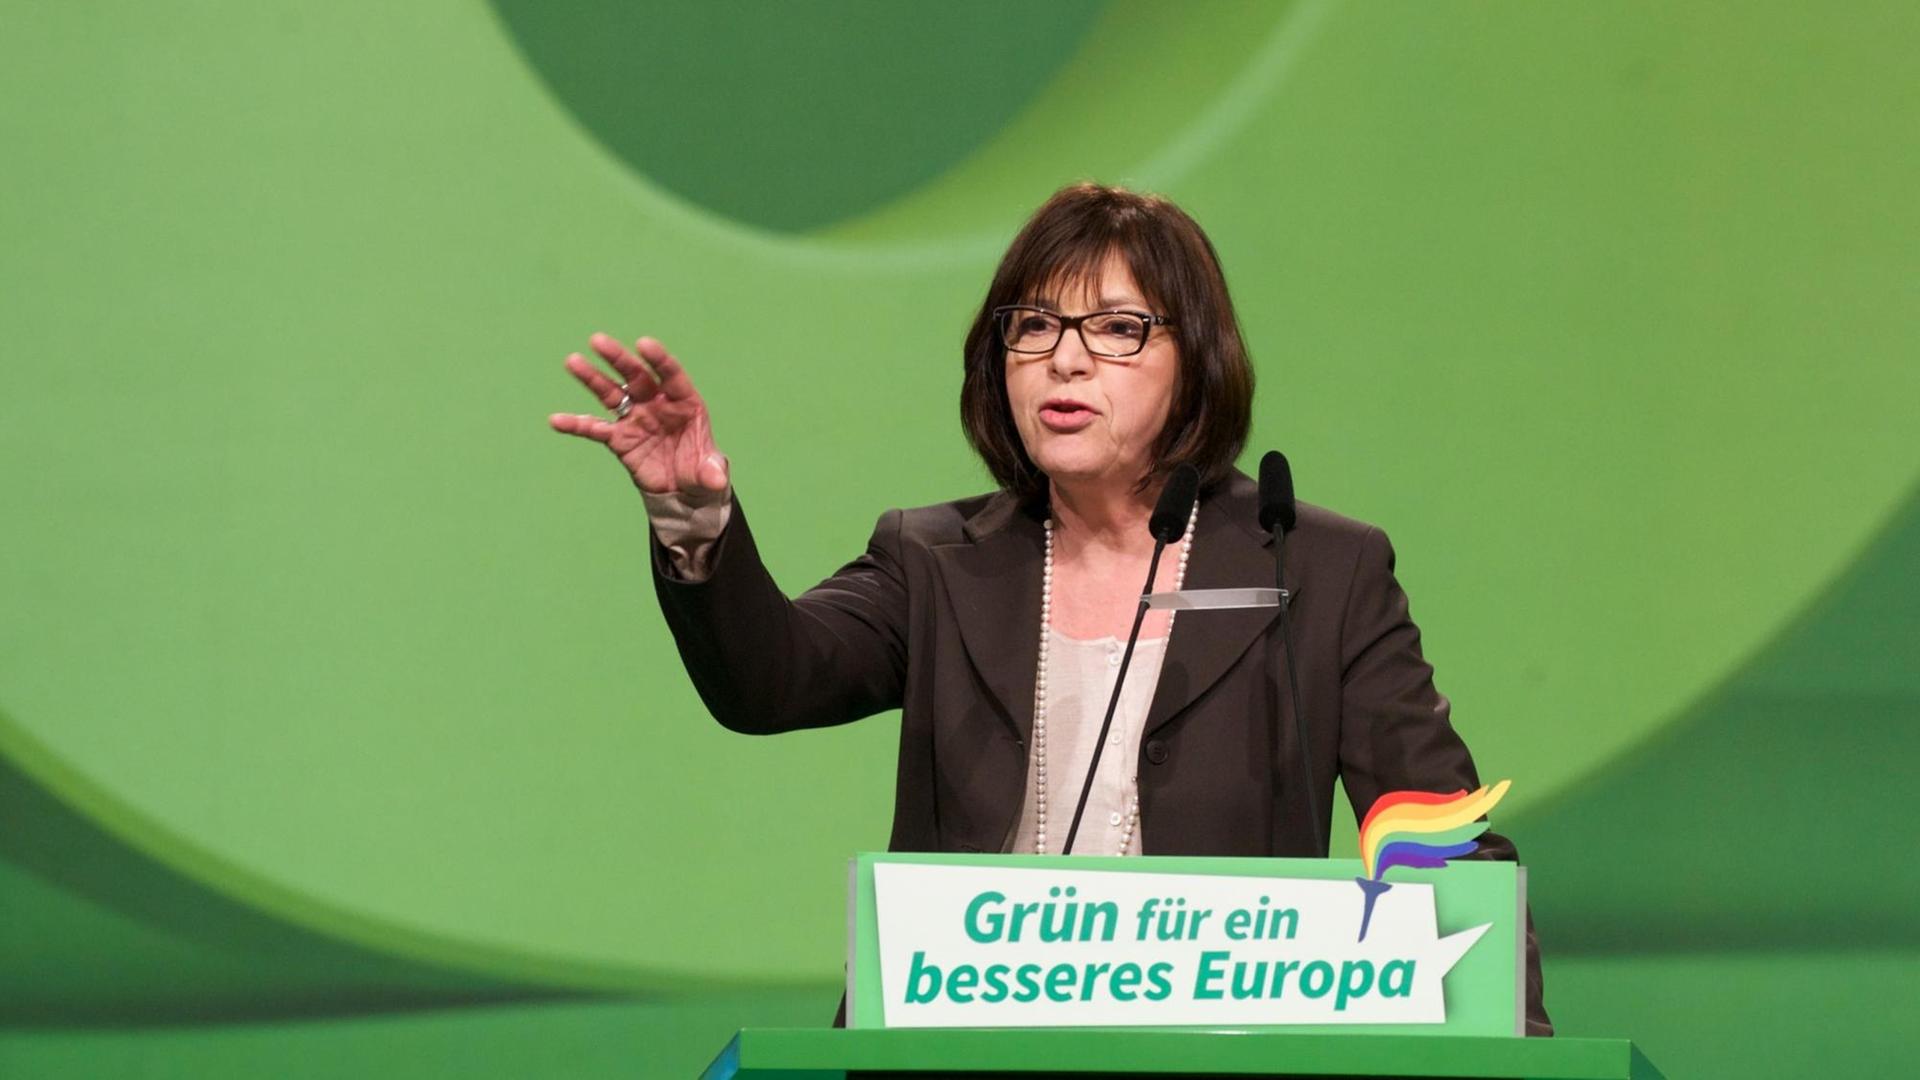 Grünen-Politikerin Rebecca Harms steht vor grünem Hintergund an einem ebenfalls grünen Rednerpult mit der Aufschrift: "Grün für ein besseres Europa". Sie spricht und gestikuliert, indem sie ihre rechte Hand hebt.